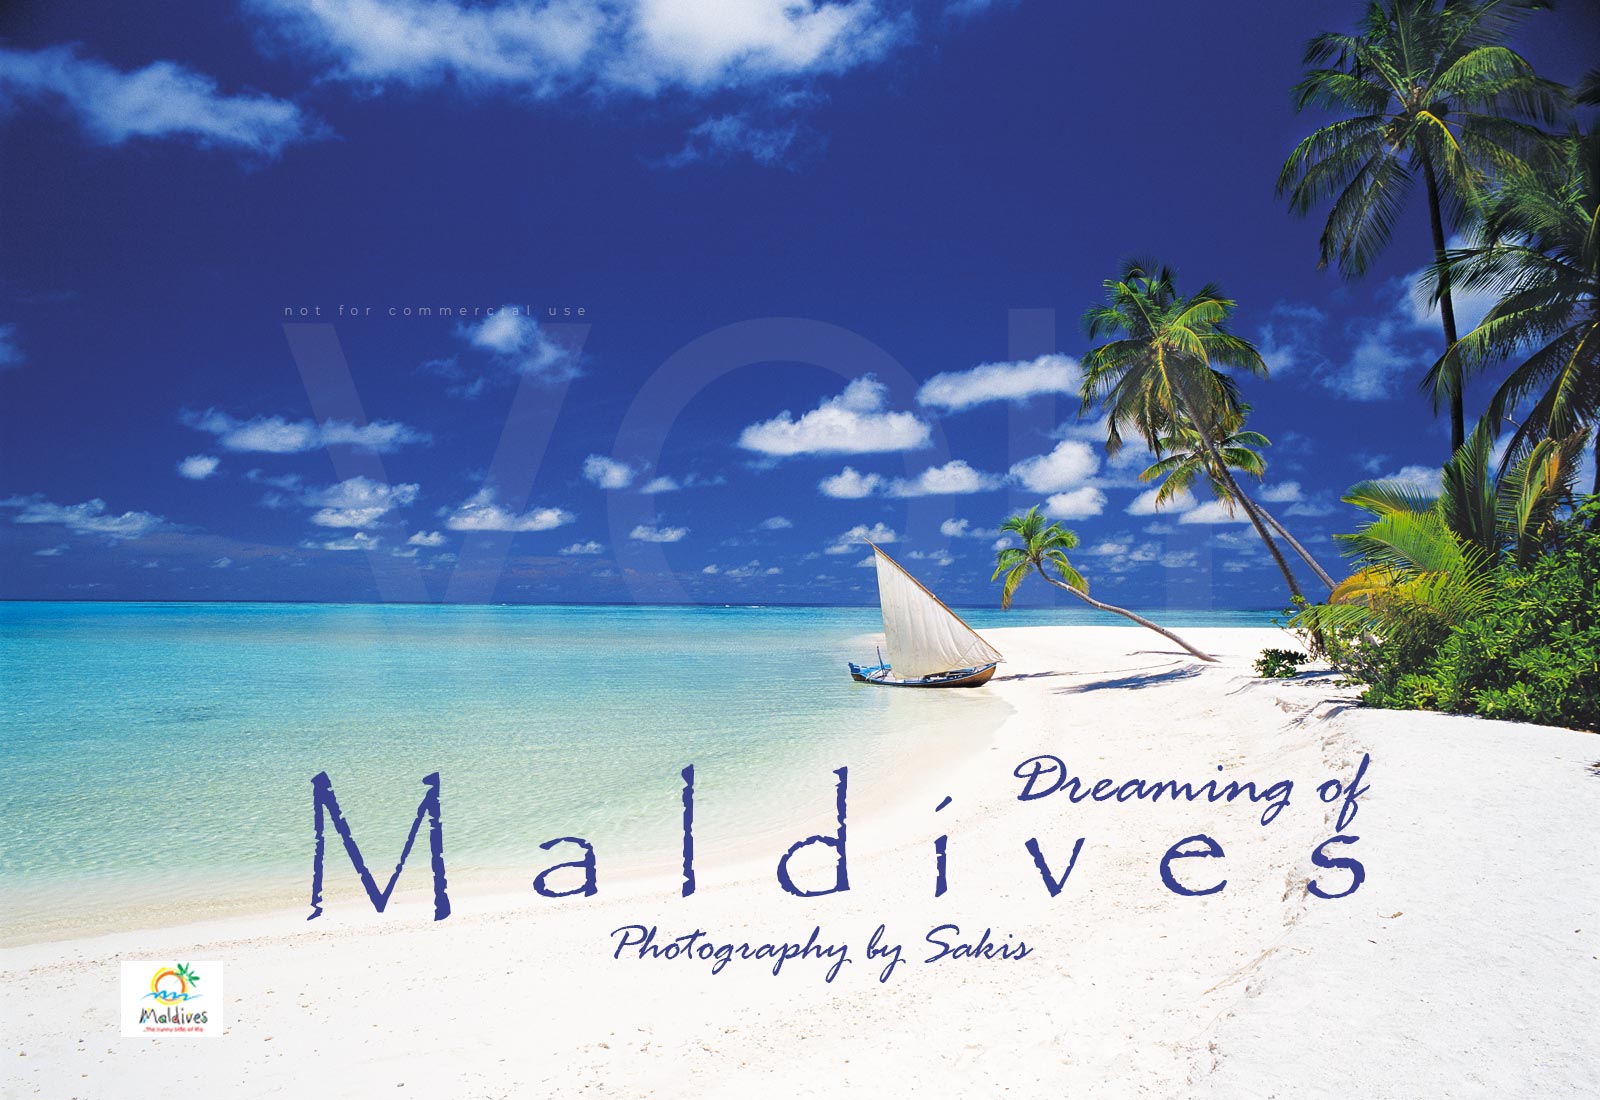 Maldives photo book 1